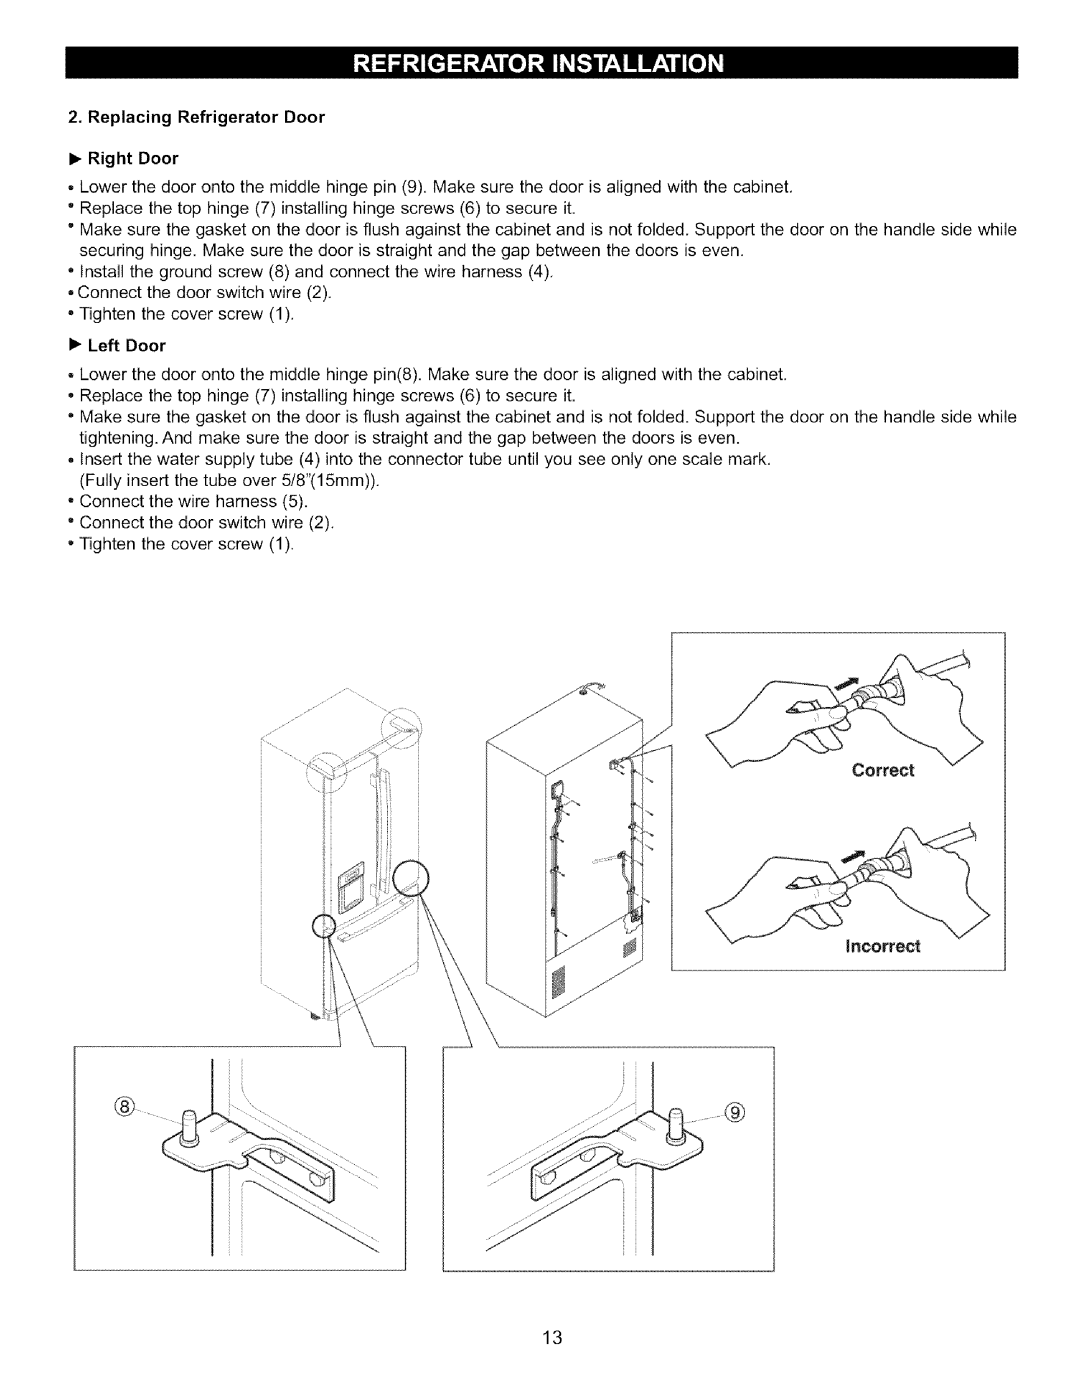 LG Electronics LFC22760 manual • Left Door, Correct, Replacing Refrigerator Door •Right Door 